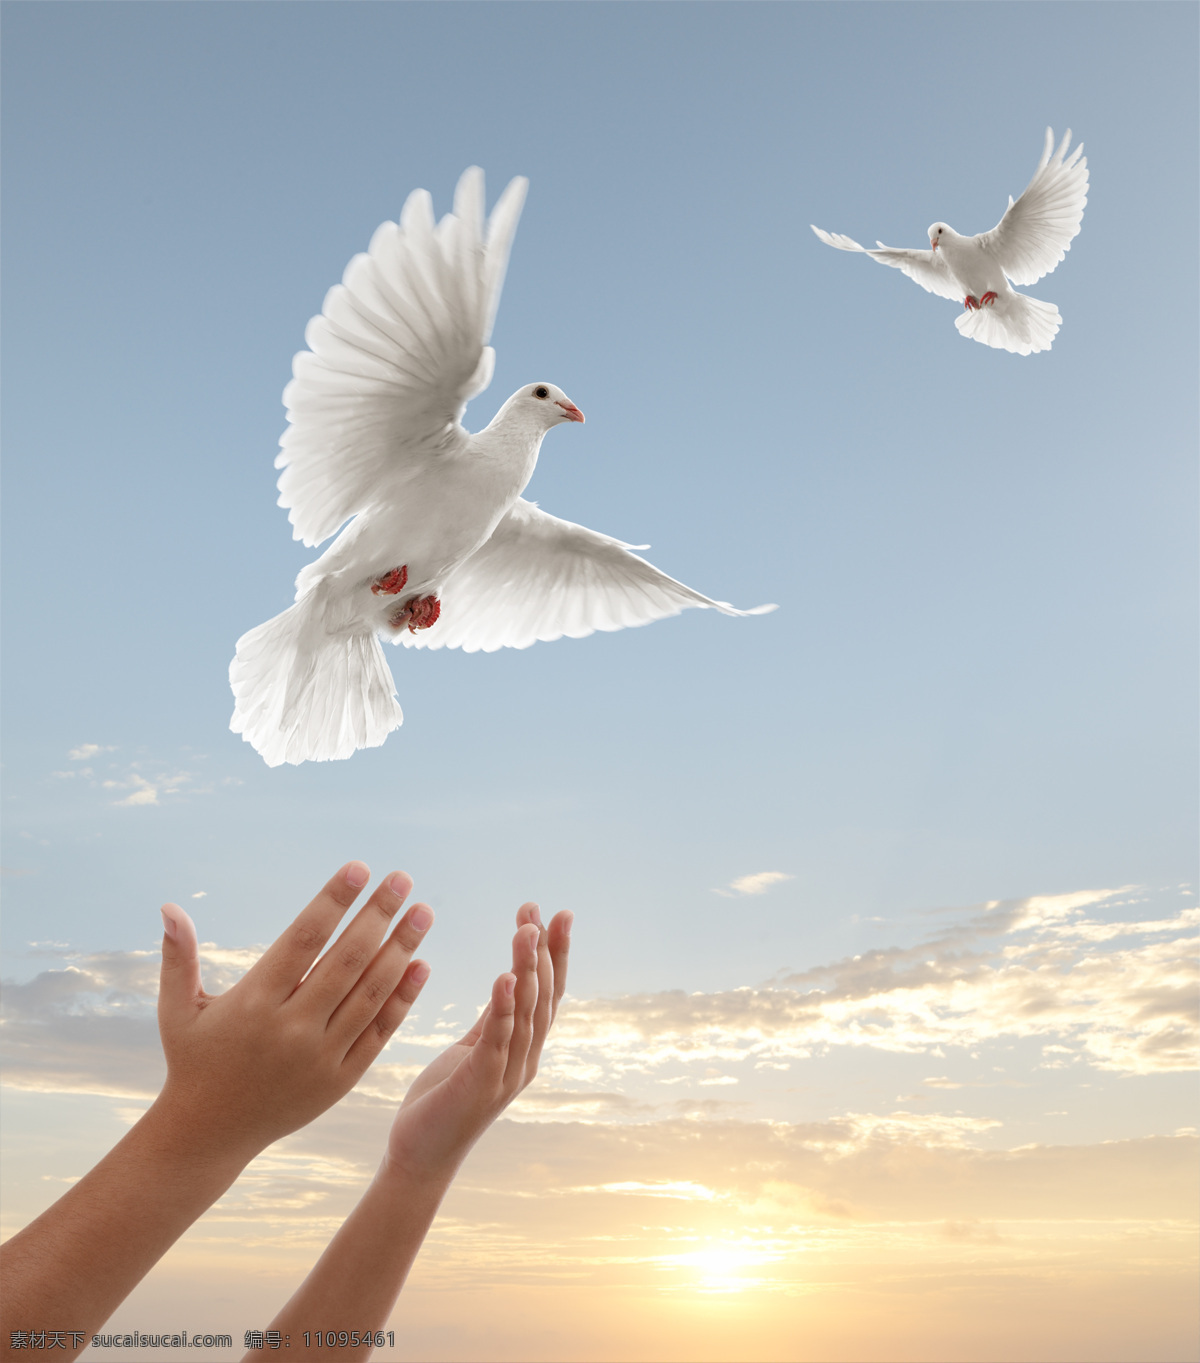 放飞 和平鸽 放飞白鸽 放飞梦想 白鸽 鸽子 飞翔的白鸽 空中飞鸟 生物世界